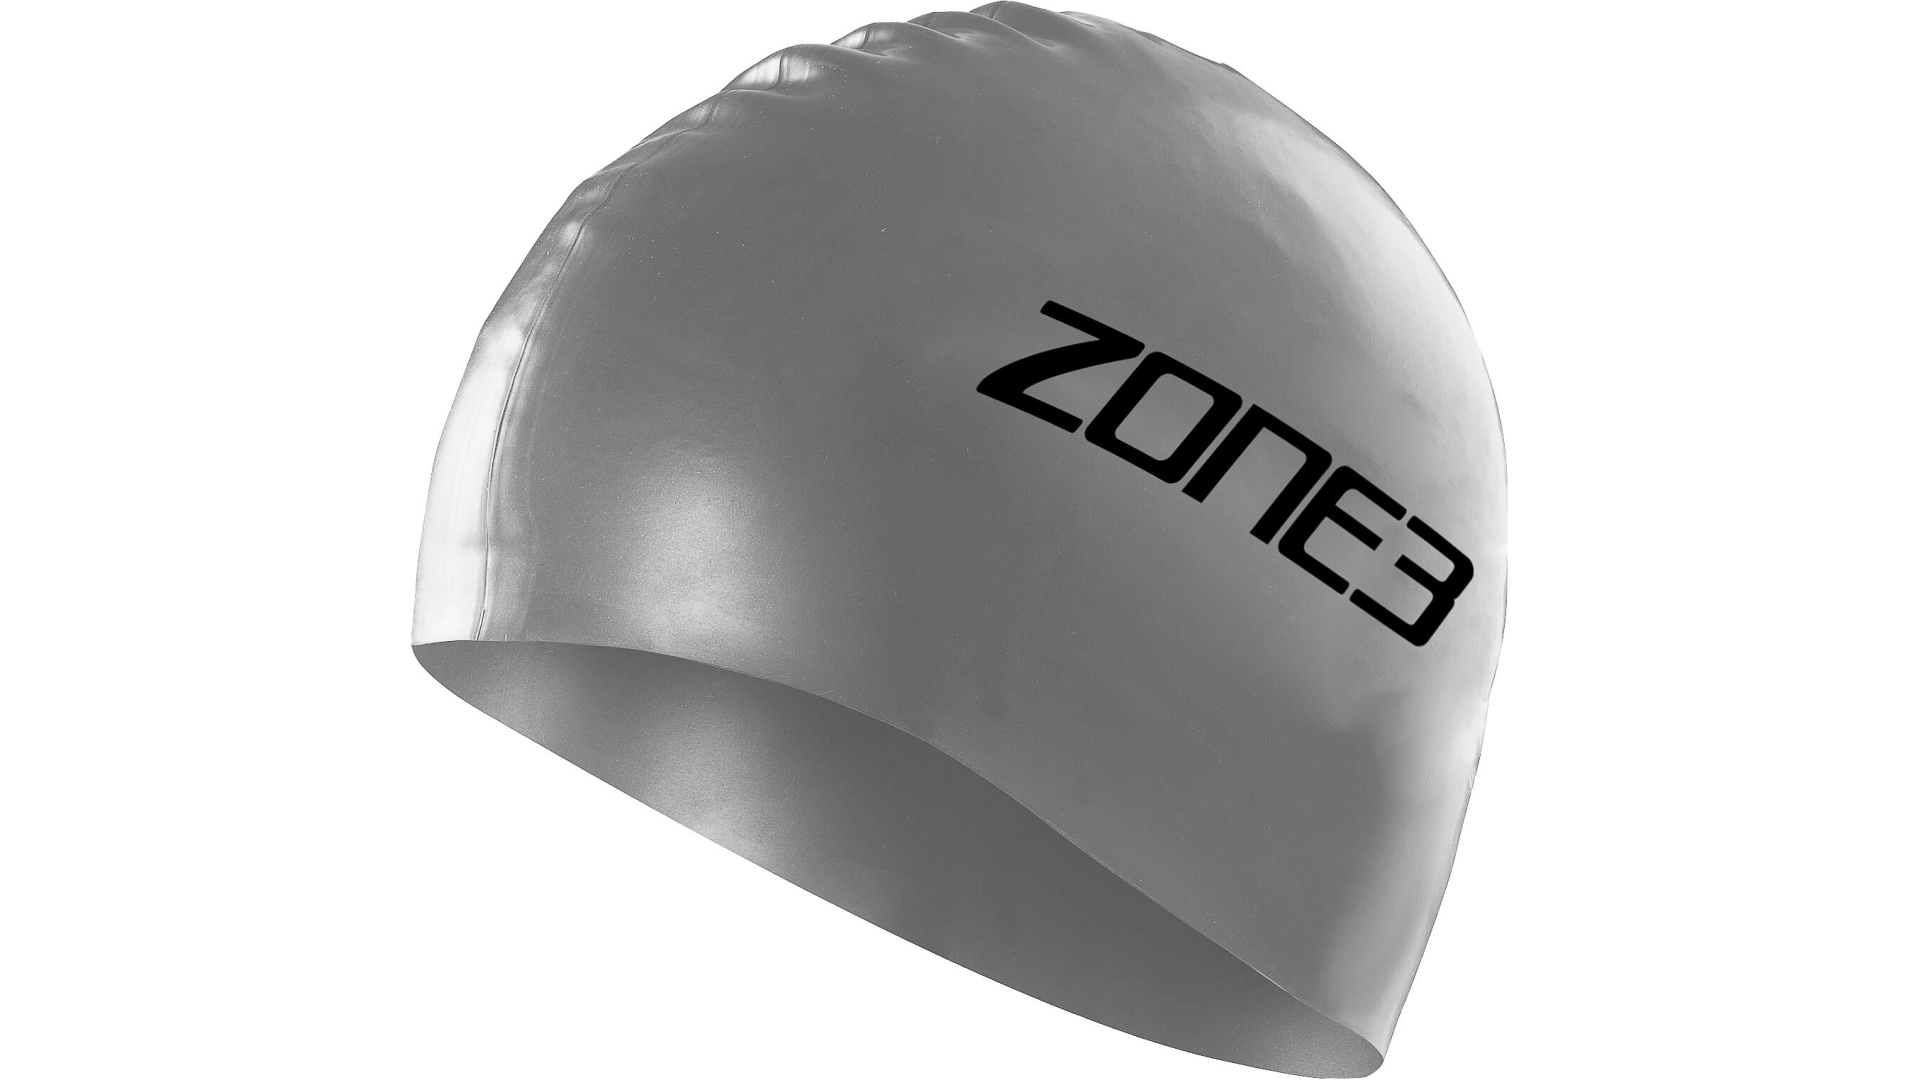 Zone3 silikoonist ujumismüts